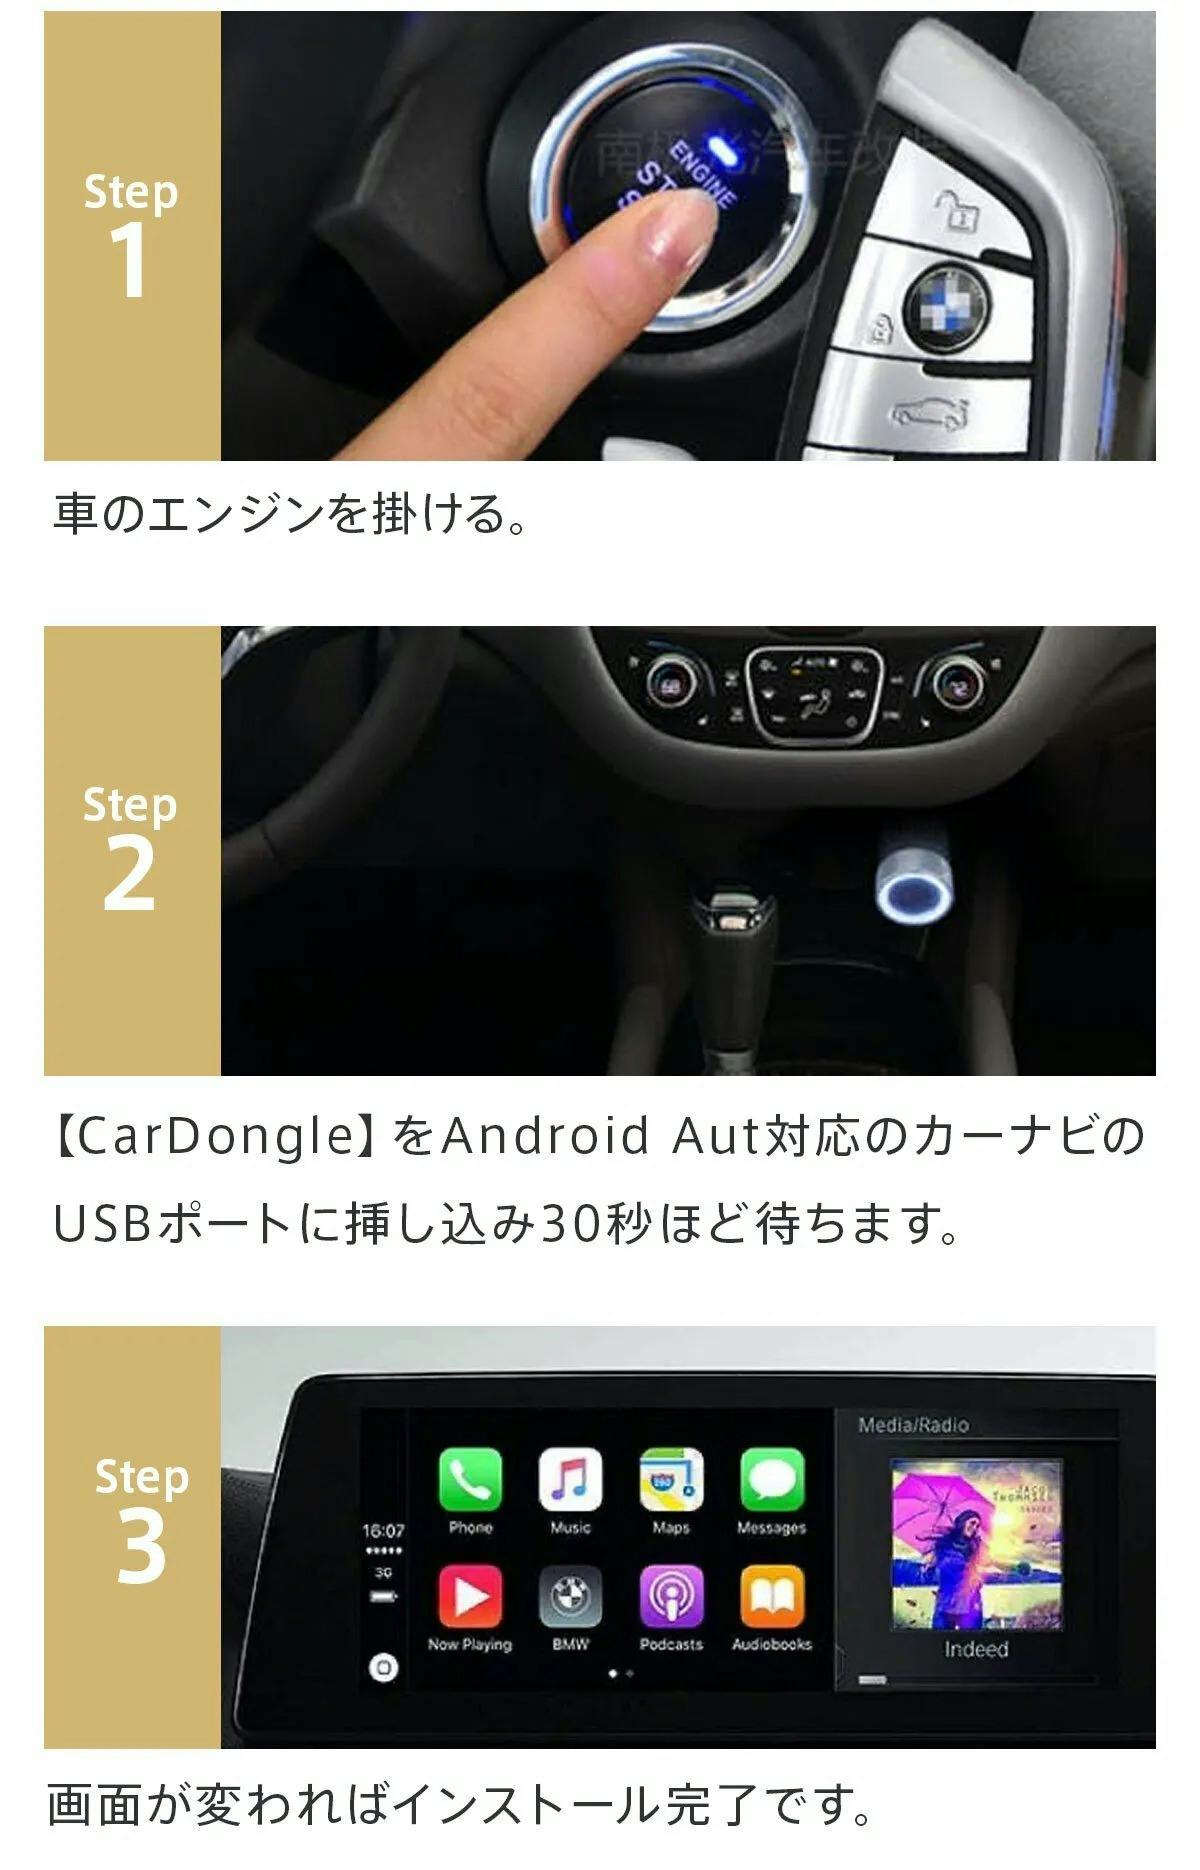 ラッピング無料】 Android化 CarDongle マウス付 カードングル ienomat